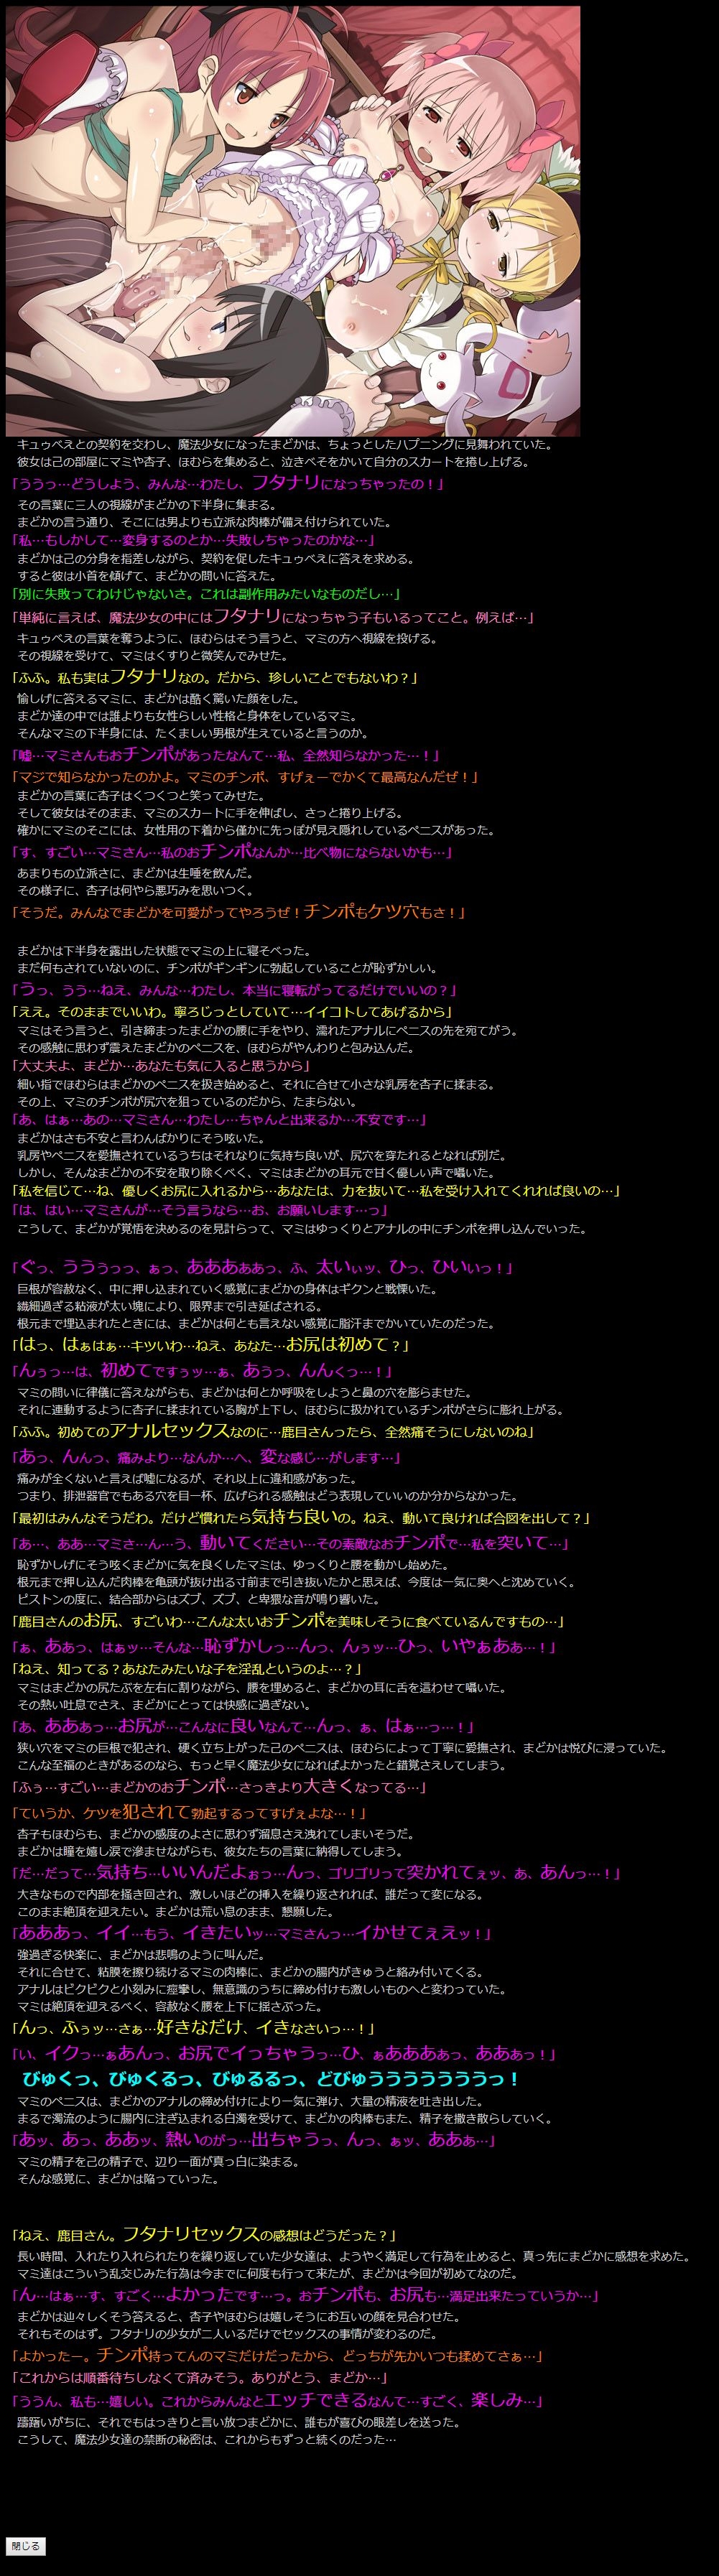 (COMIC1☆5) [LolitaChannel (Arigase Shinji)] Yuumei Chara Kannou Shousetsu CG Shuu No. 185!! Puella Magi Madoka Magica HaaHaa CG Shuu (Puella Magi Madoka Magica) 17